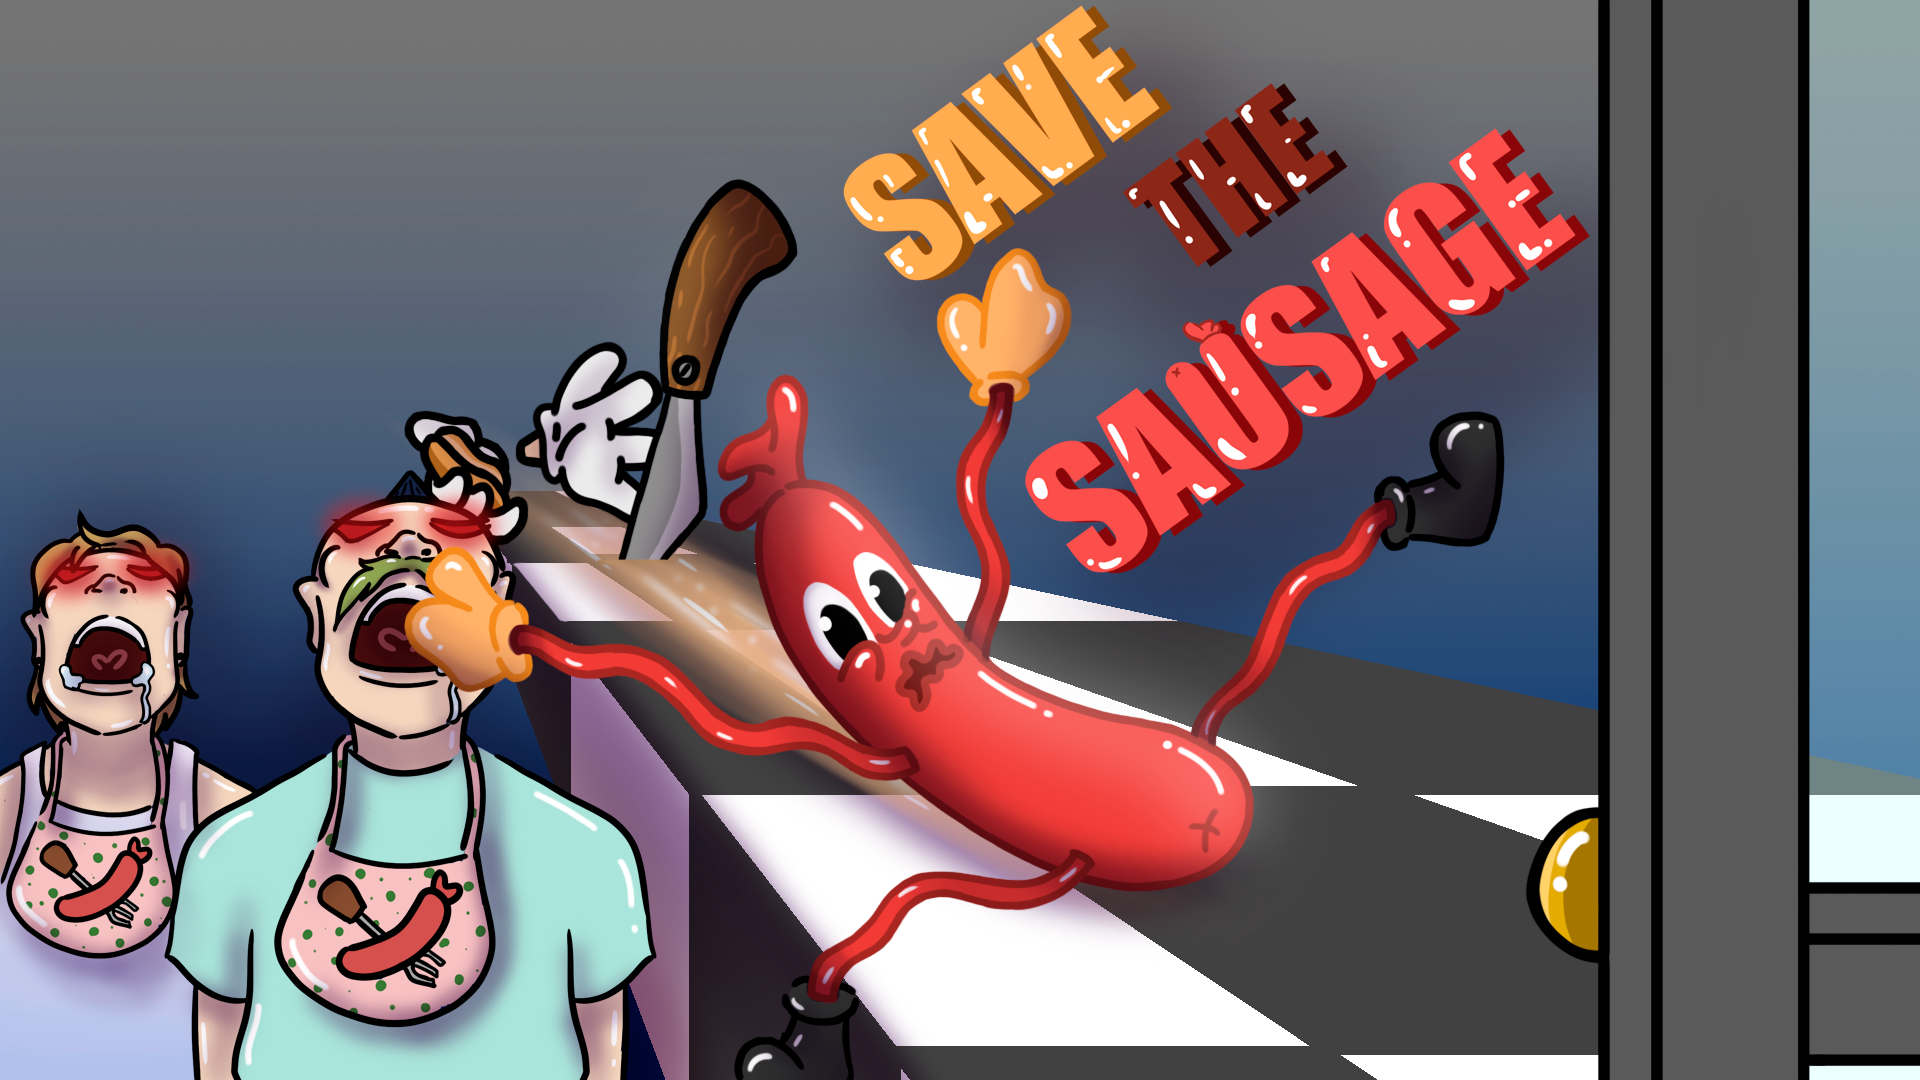 Save The Sausage